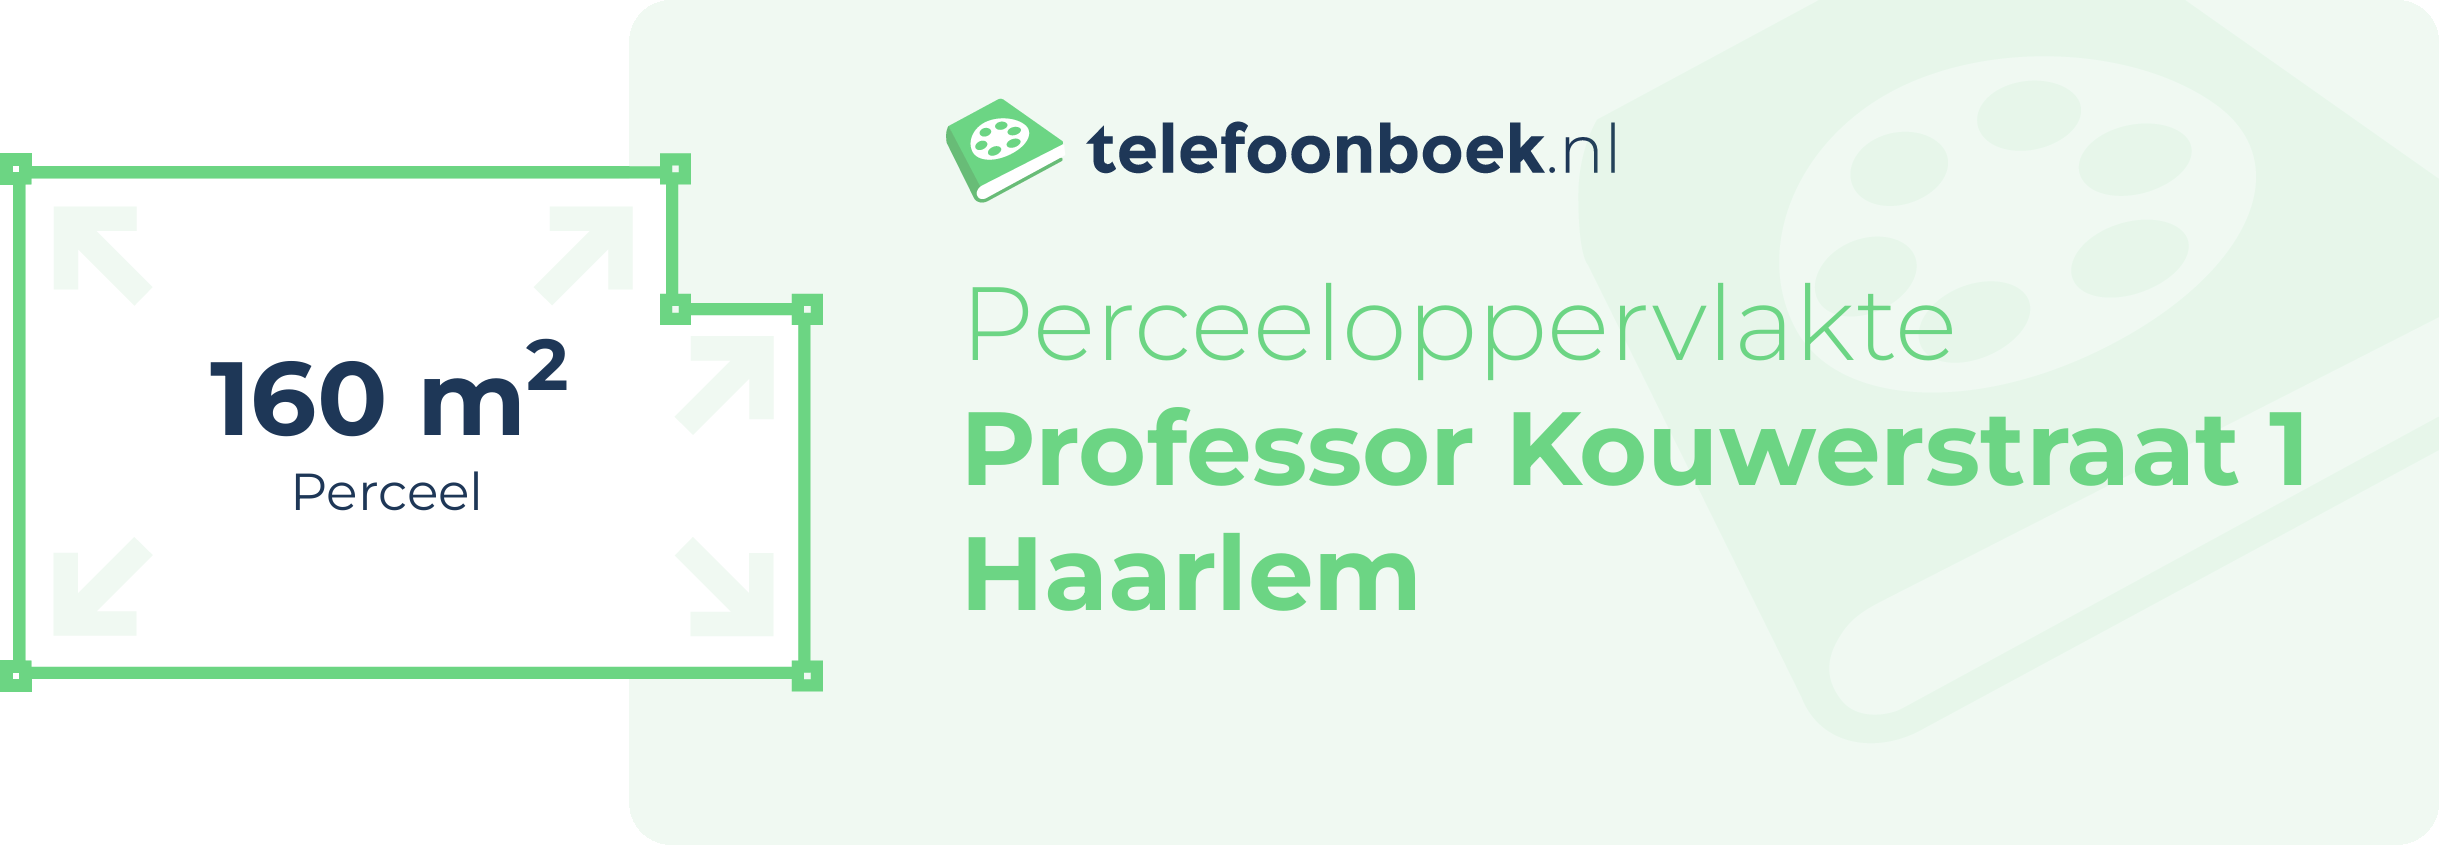 Perceeloppervlakte Professor Kouwerstraat 1 Haarlem